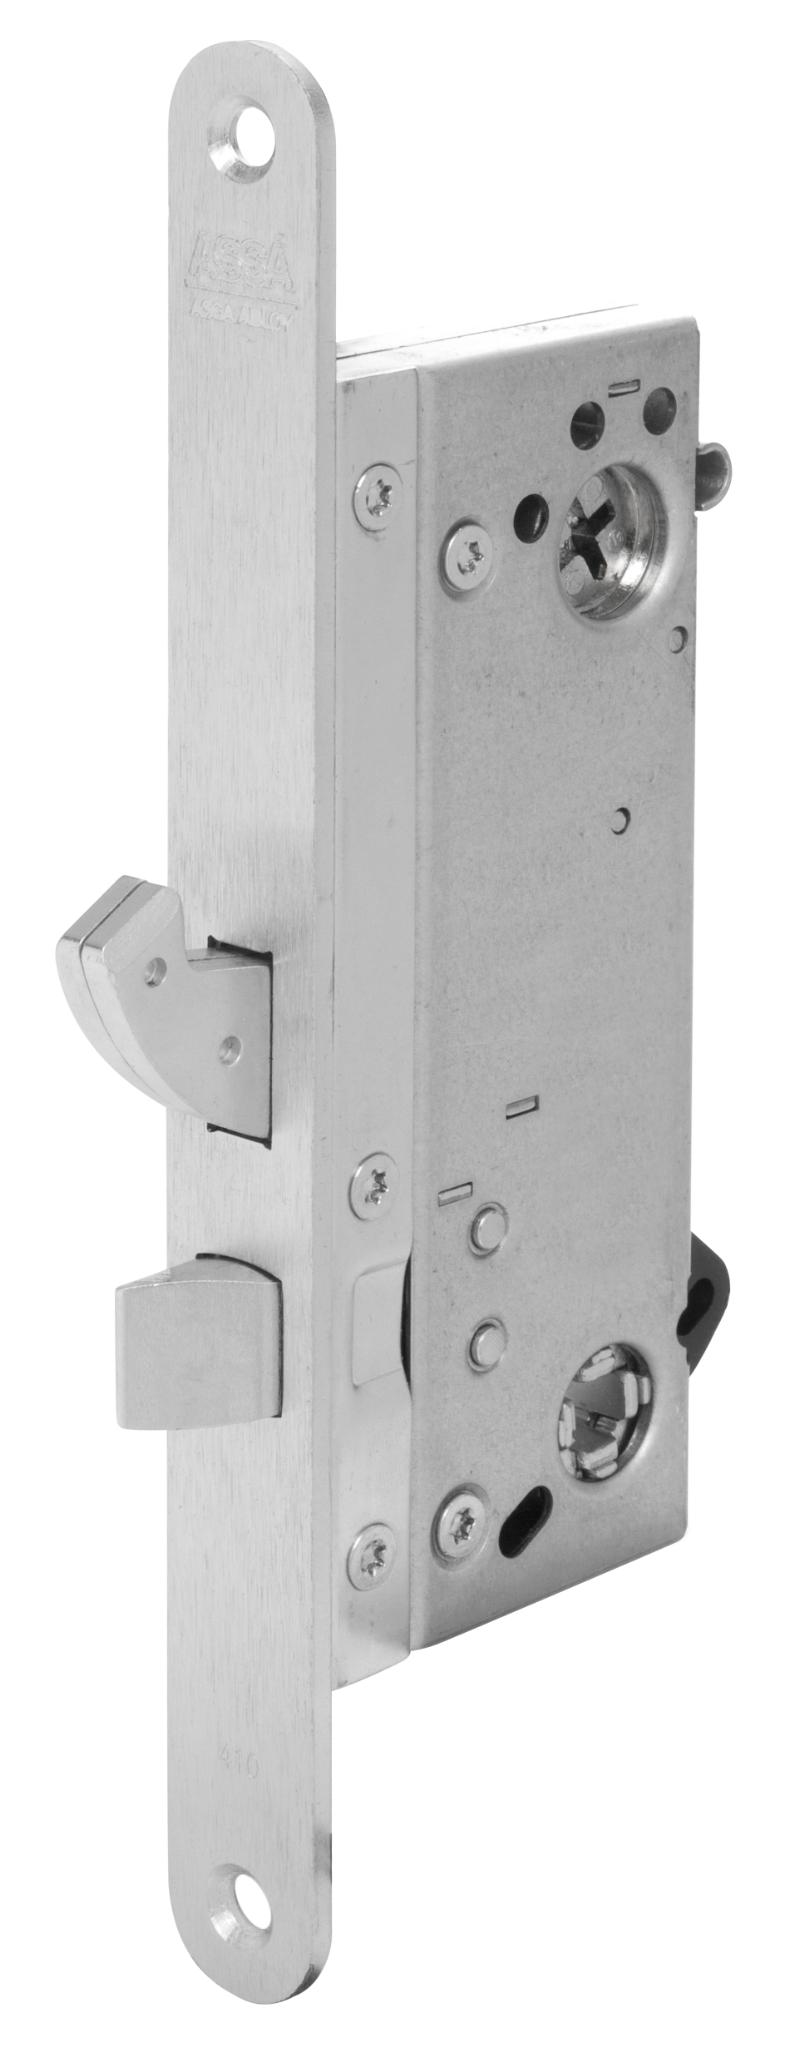 Assa låseboks Connect 410/50v revers. (968431)